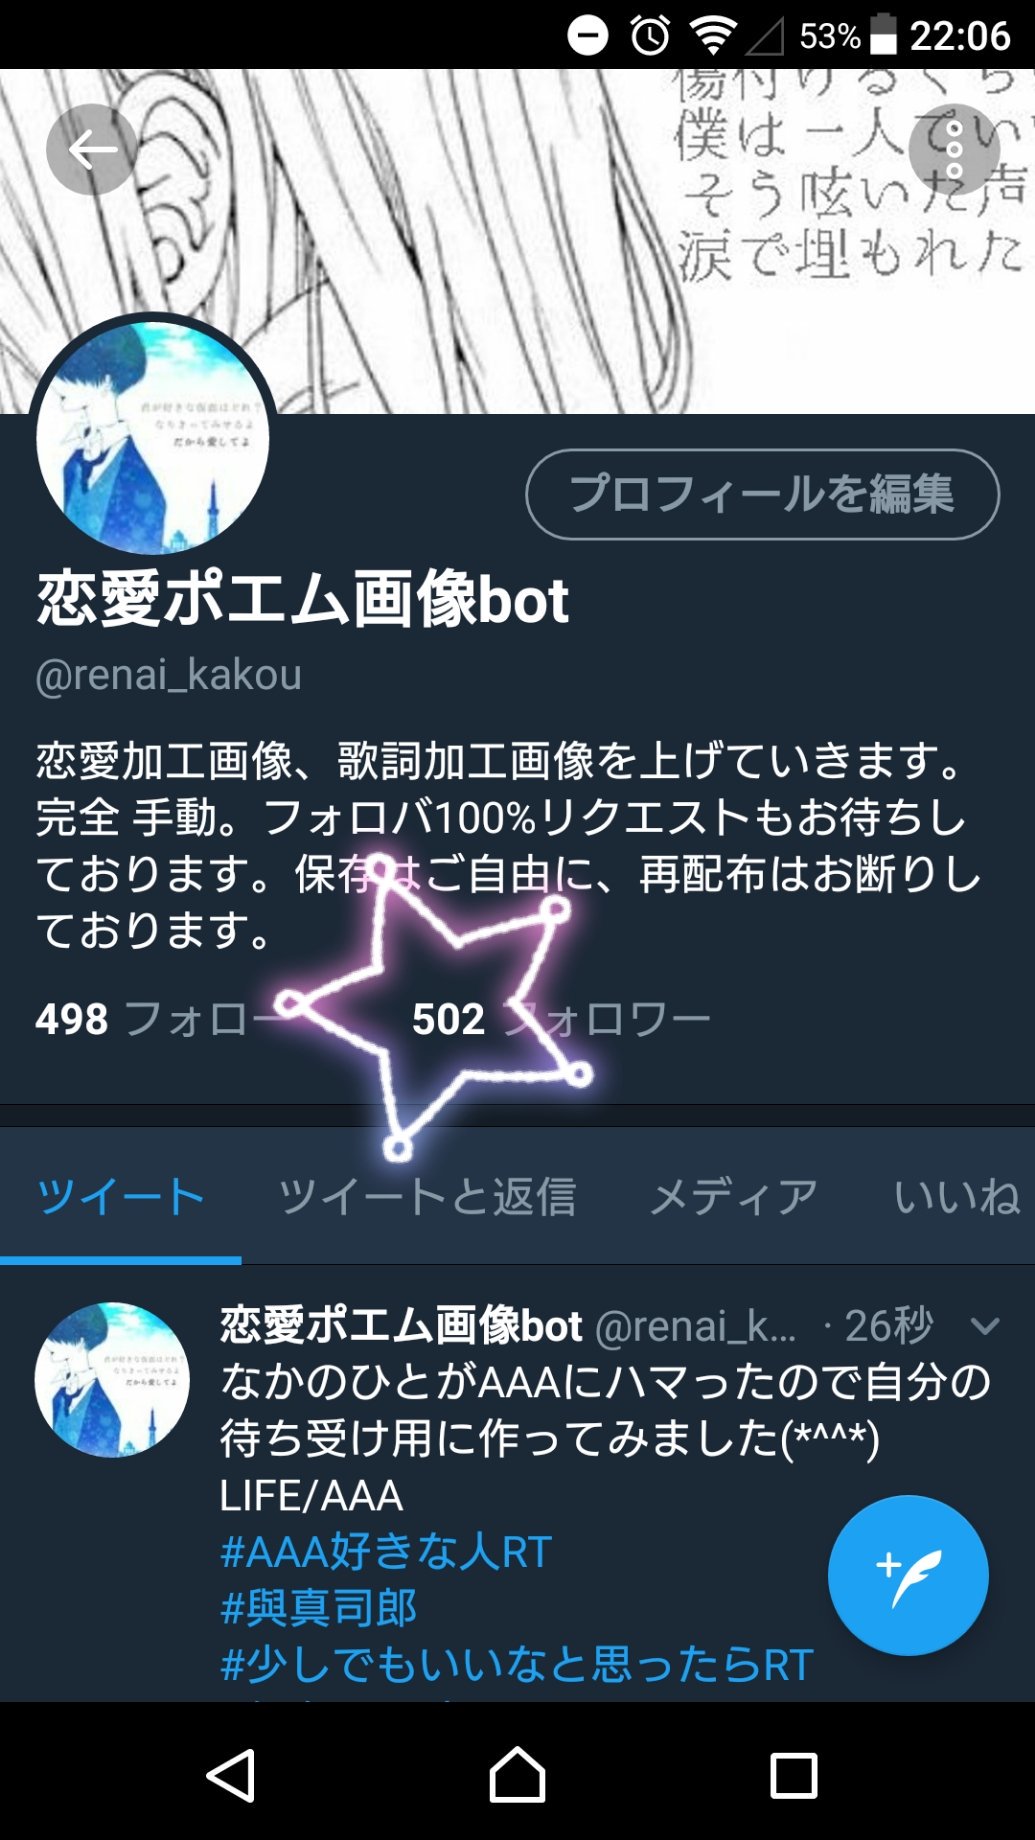 恋愛ポエム画像bot Renai Kakou Twitter